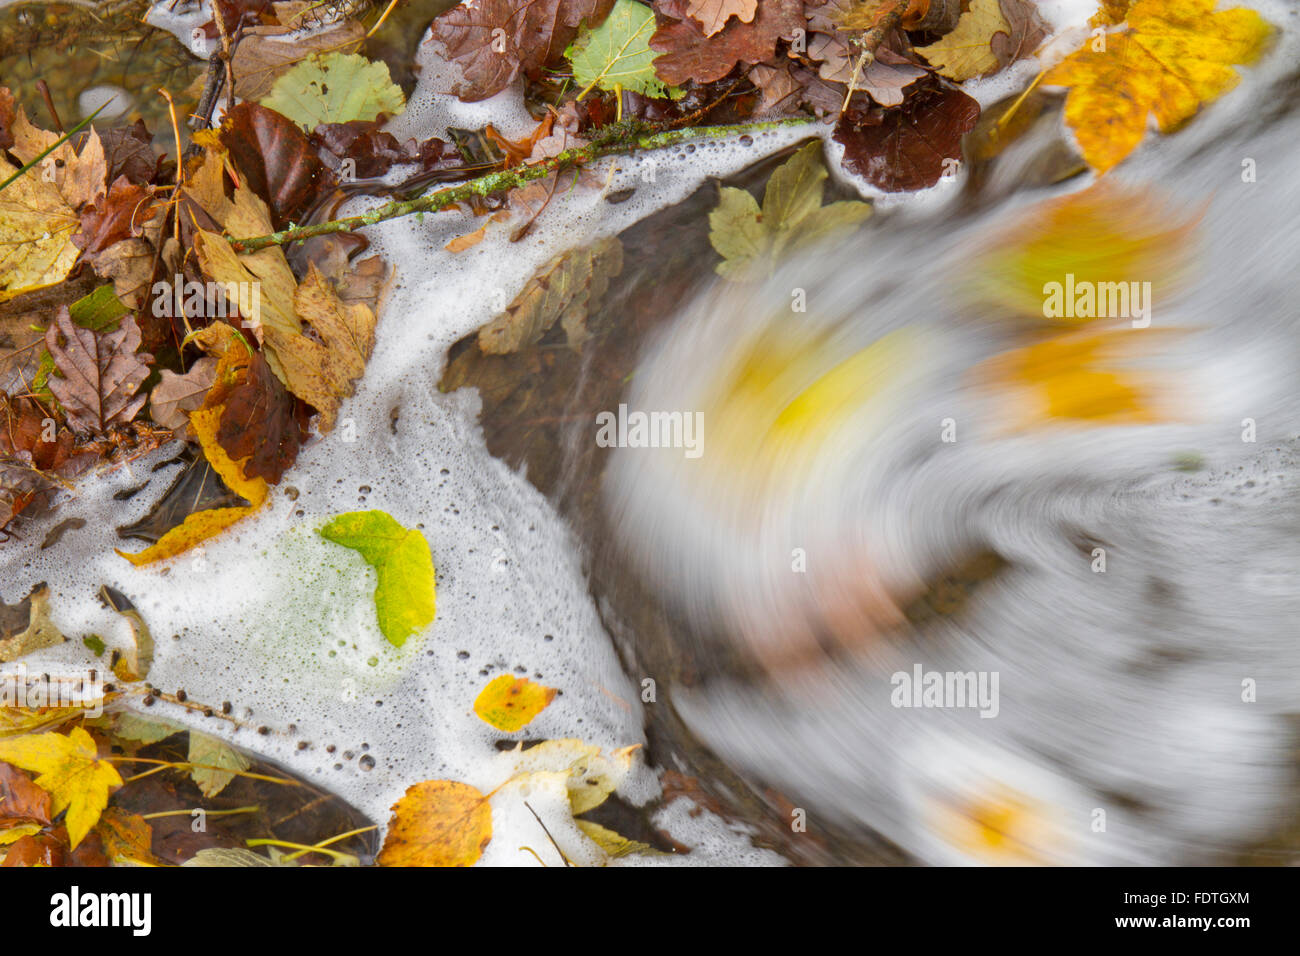 L'accumulation de feuilles mortes dans un ruisseau. Powys, Pays de Galles. Novembre. Banque D'Images